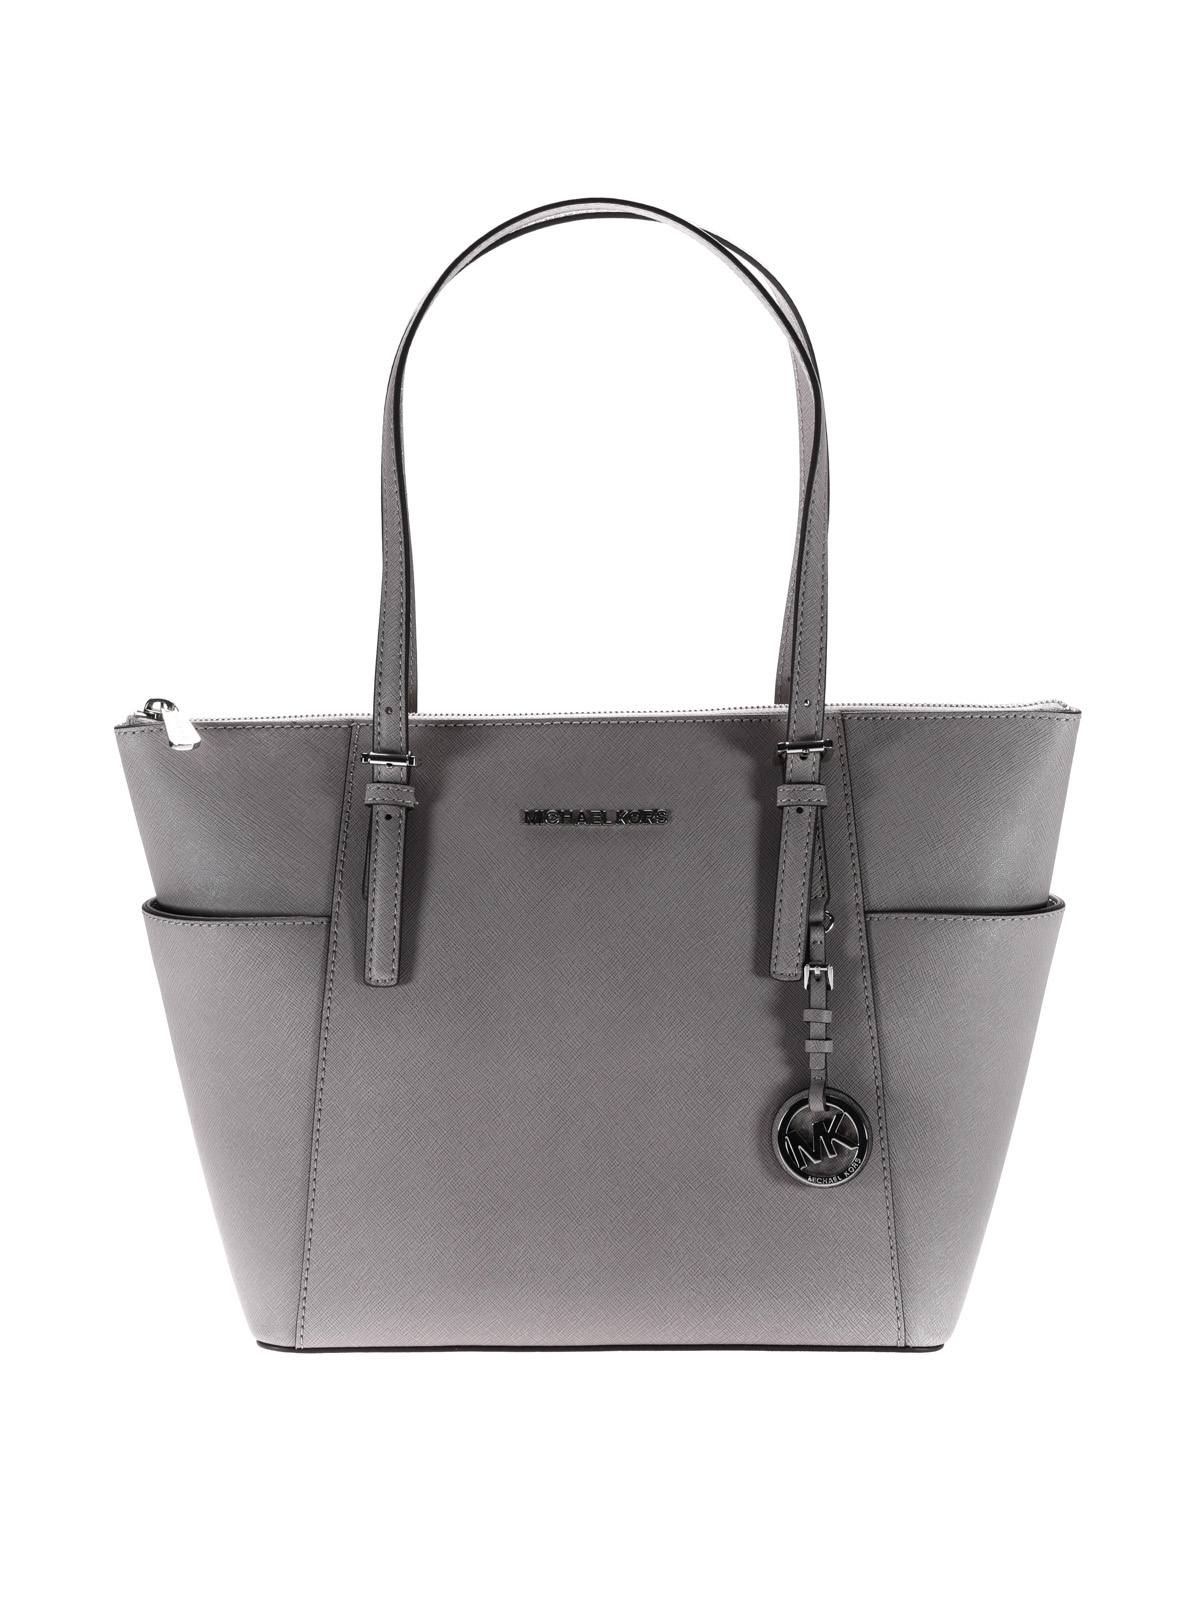 zip grey saffiano bag - totes bags 